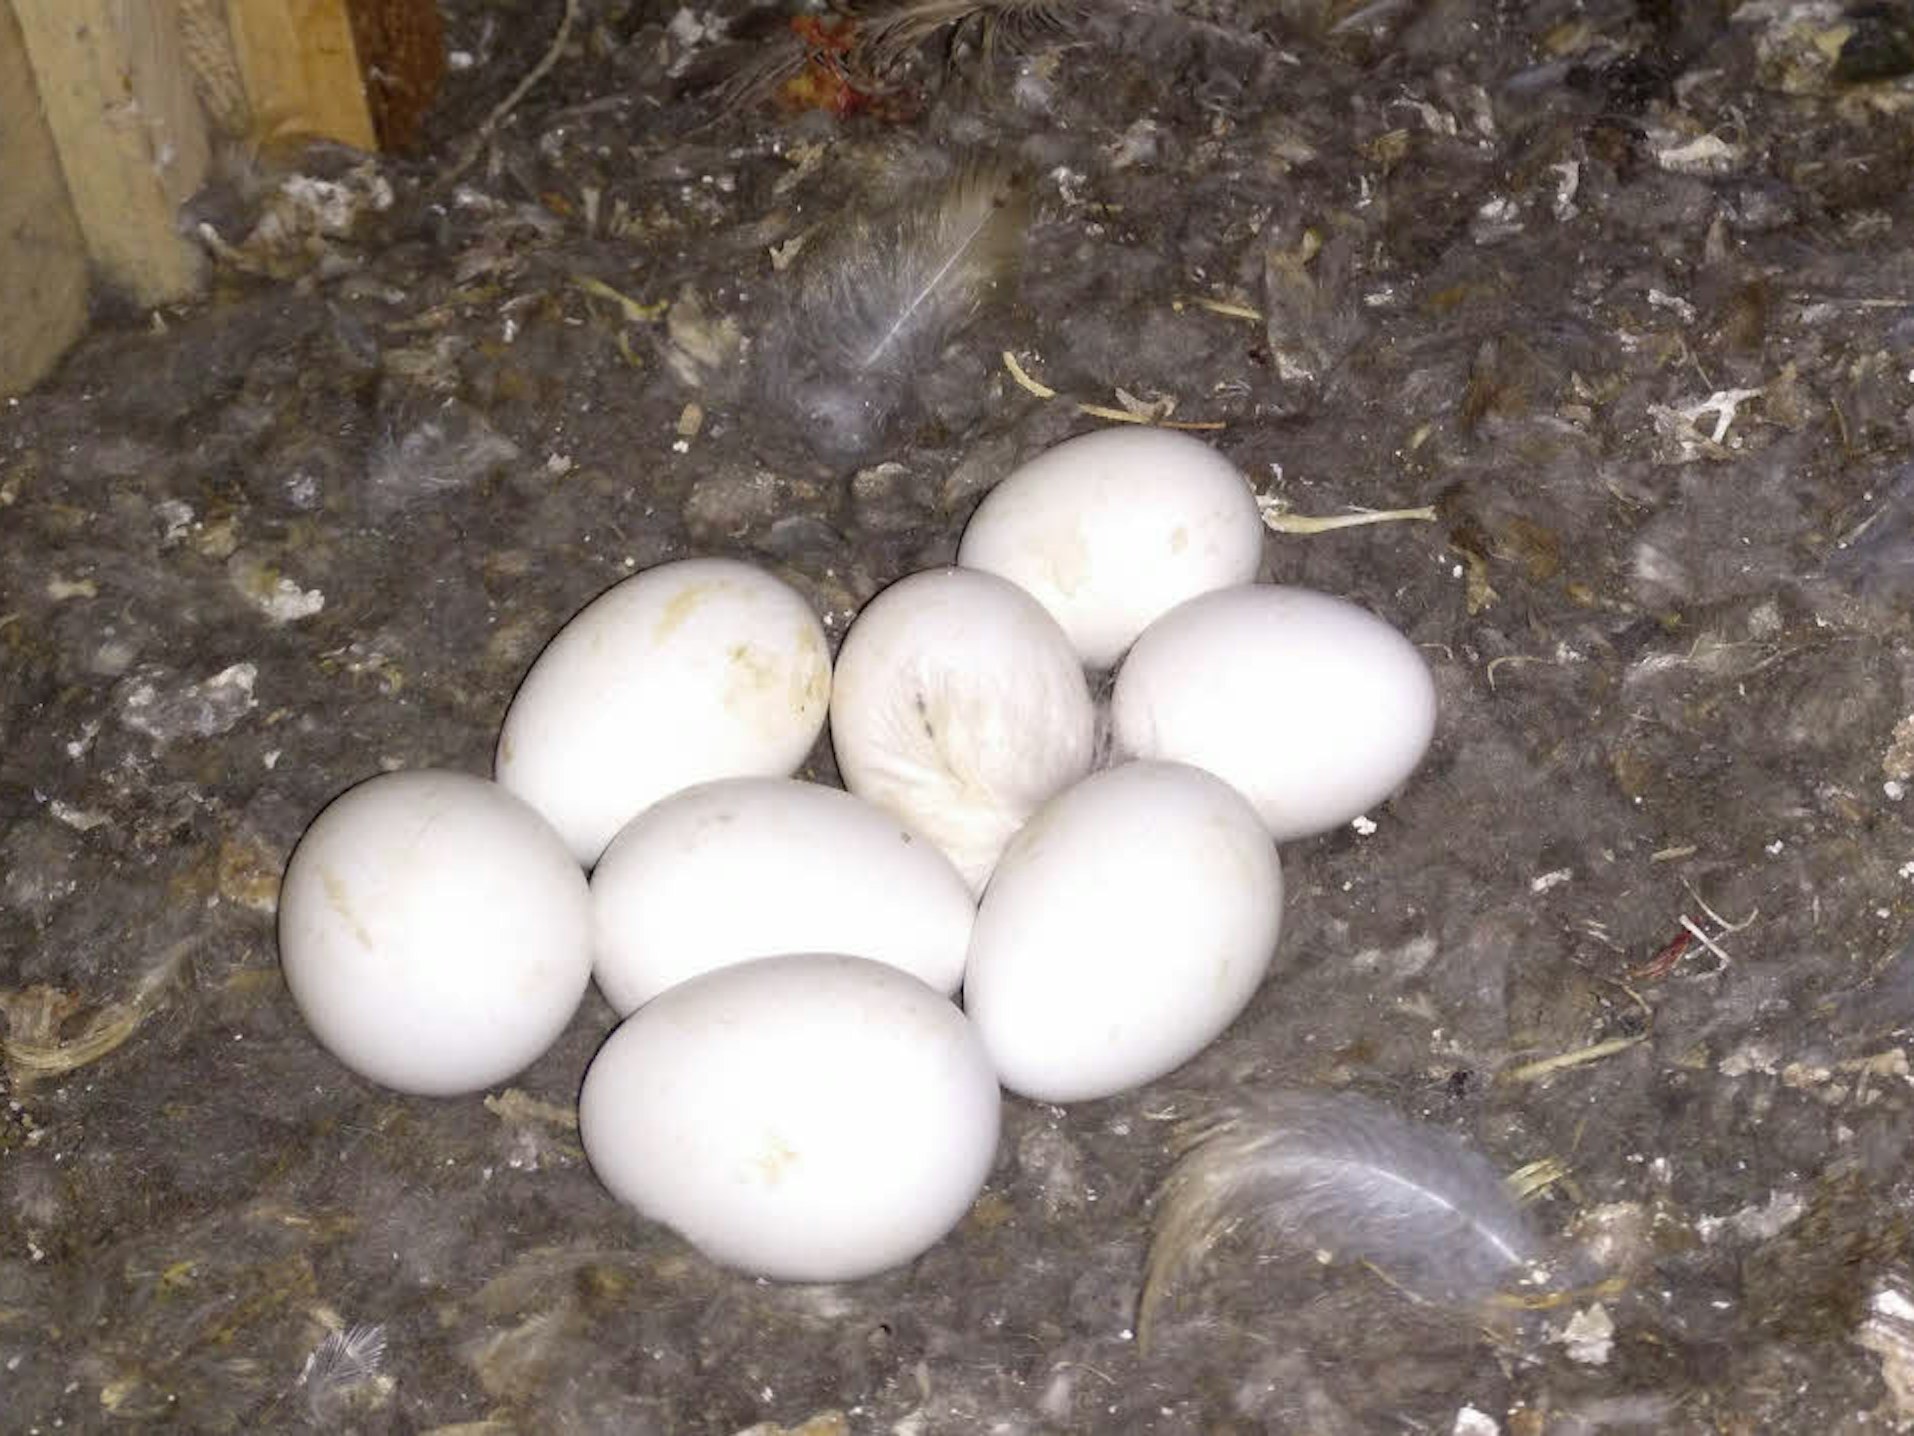 Die Ehrenamtler des Naturschutzbundes entdeckten im Frühjahr acht Eier von Schleiereulen.